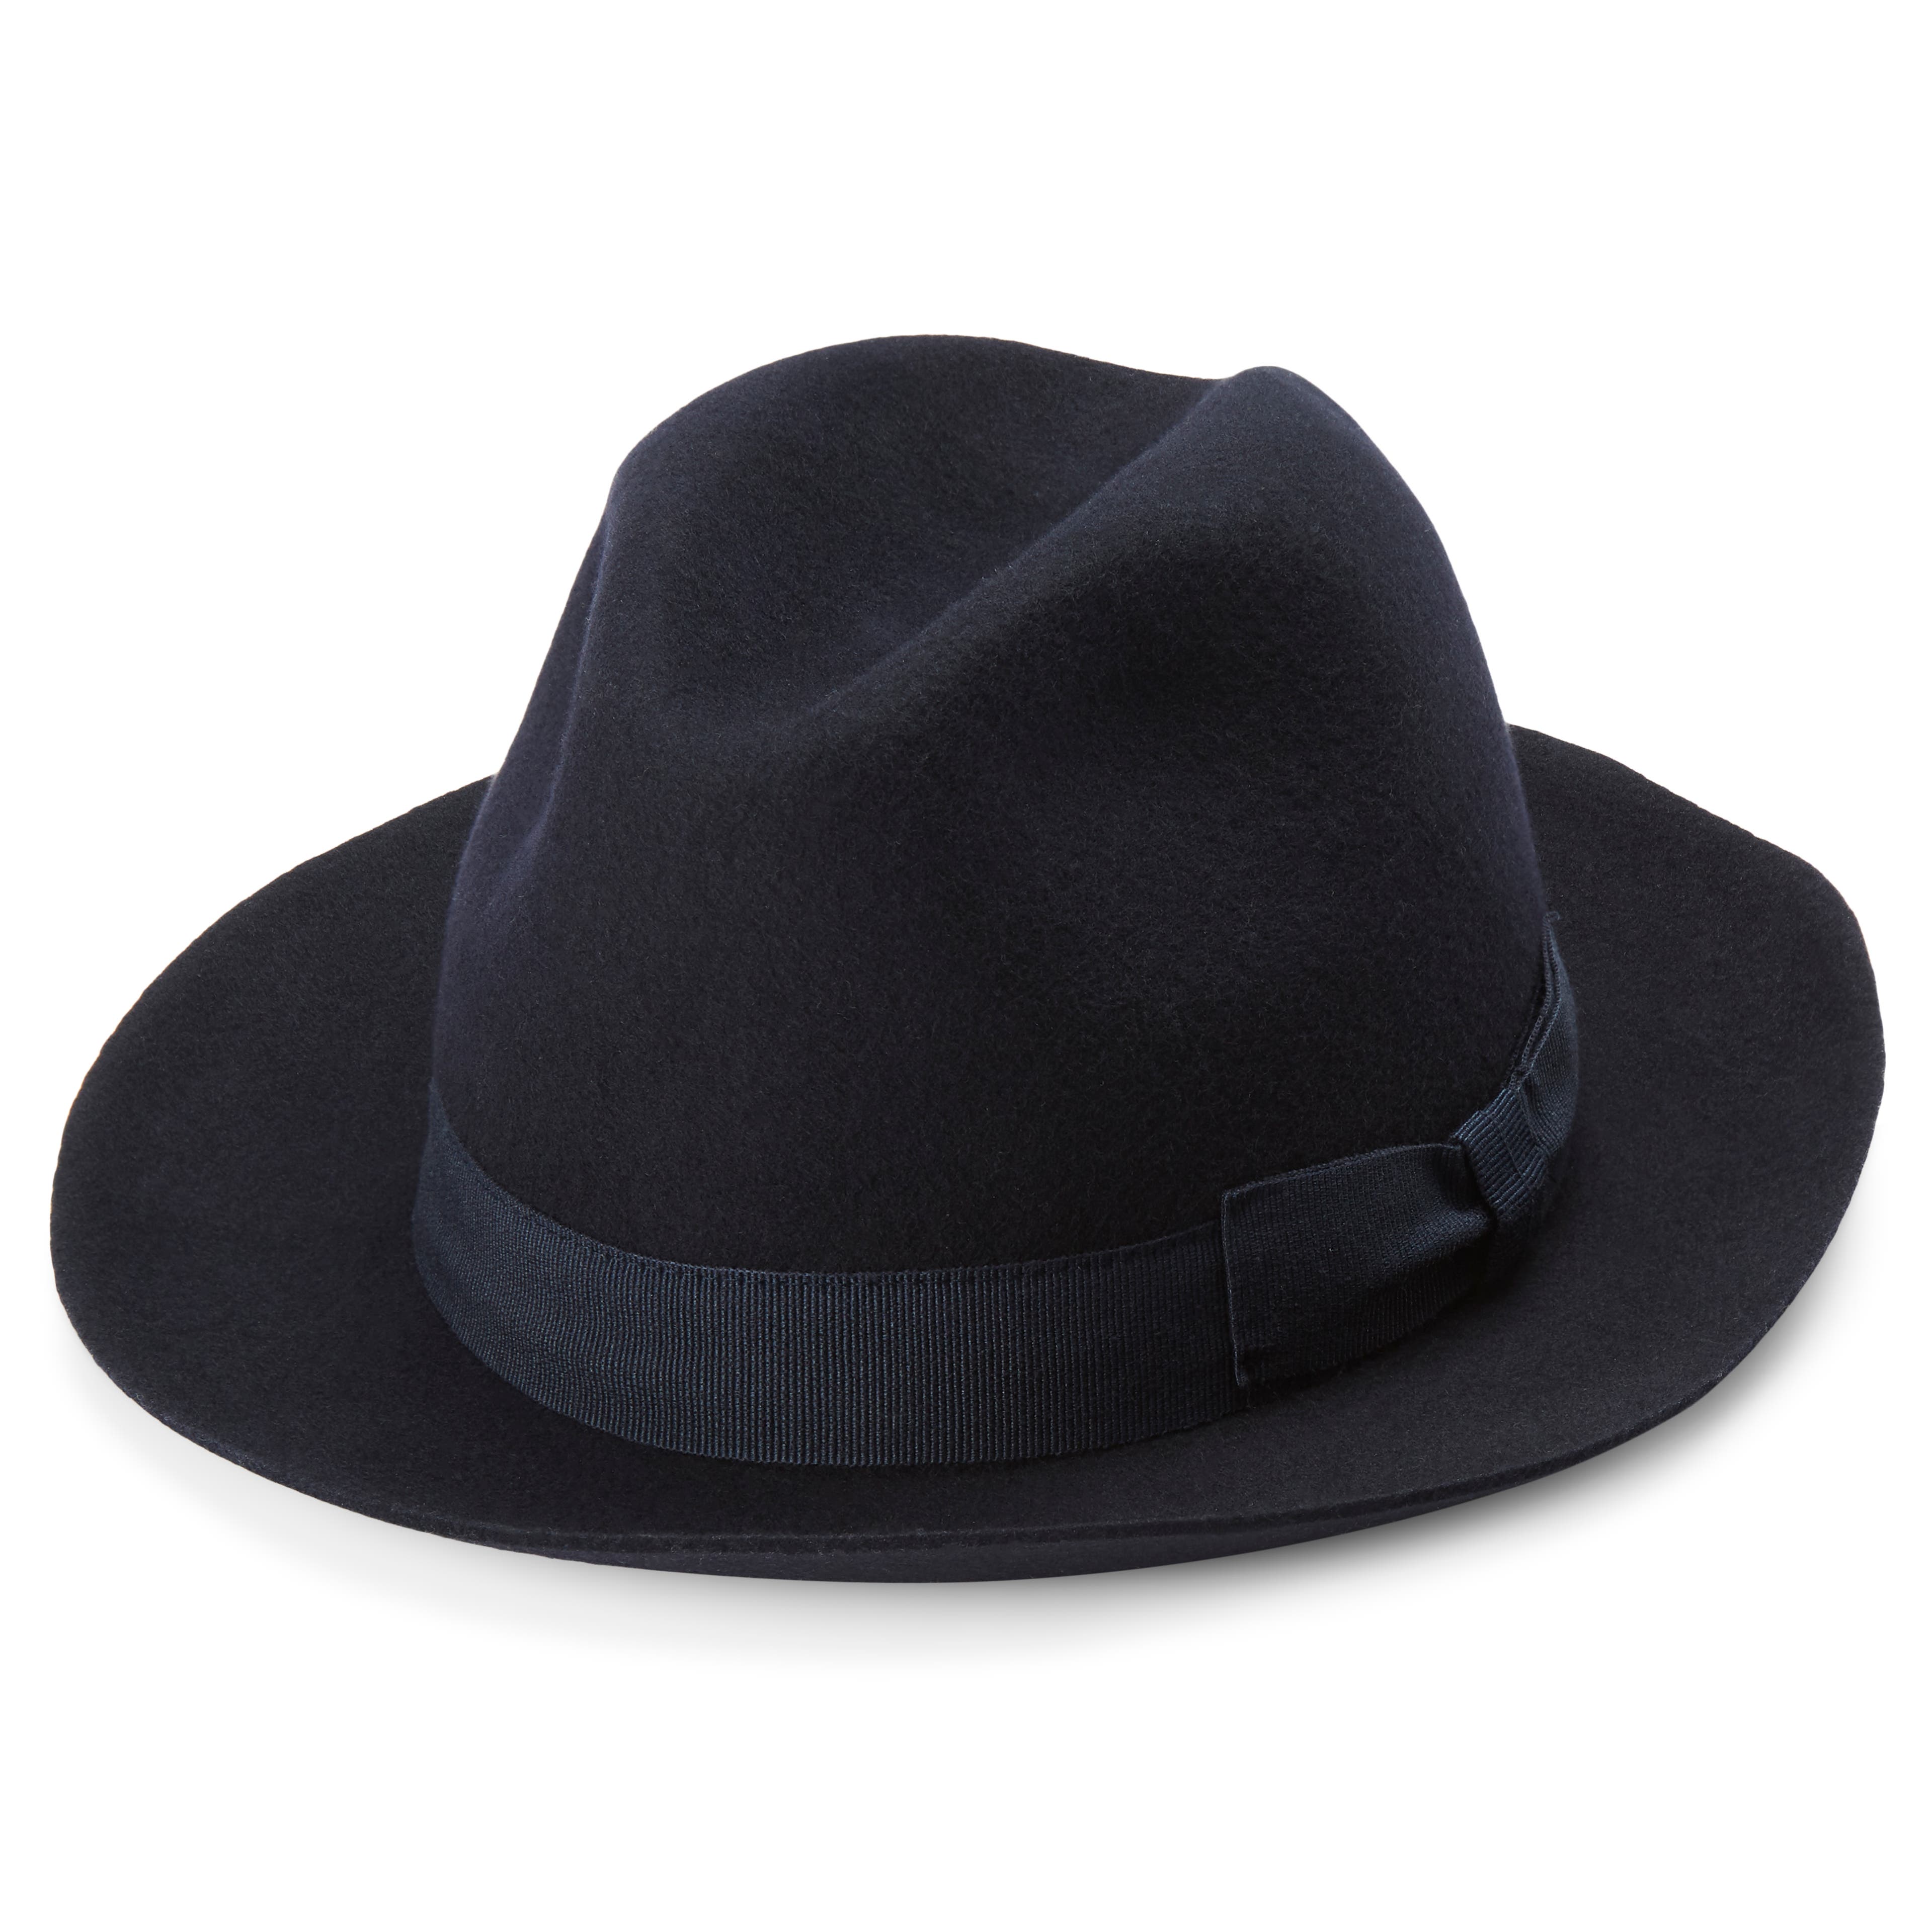 Filippo tmavomodrý fedora klobúk Moda s nedokončenými okrajmi 